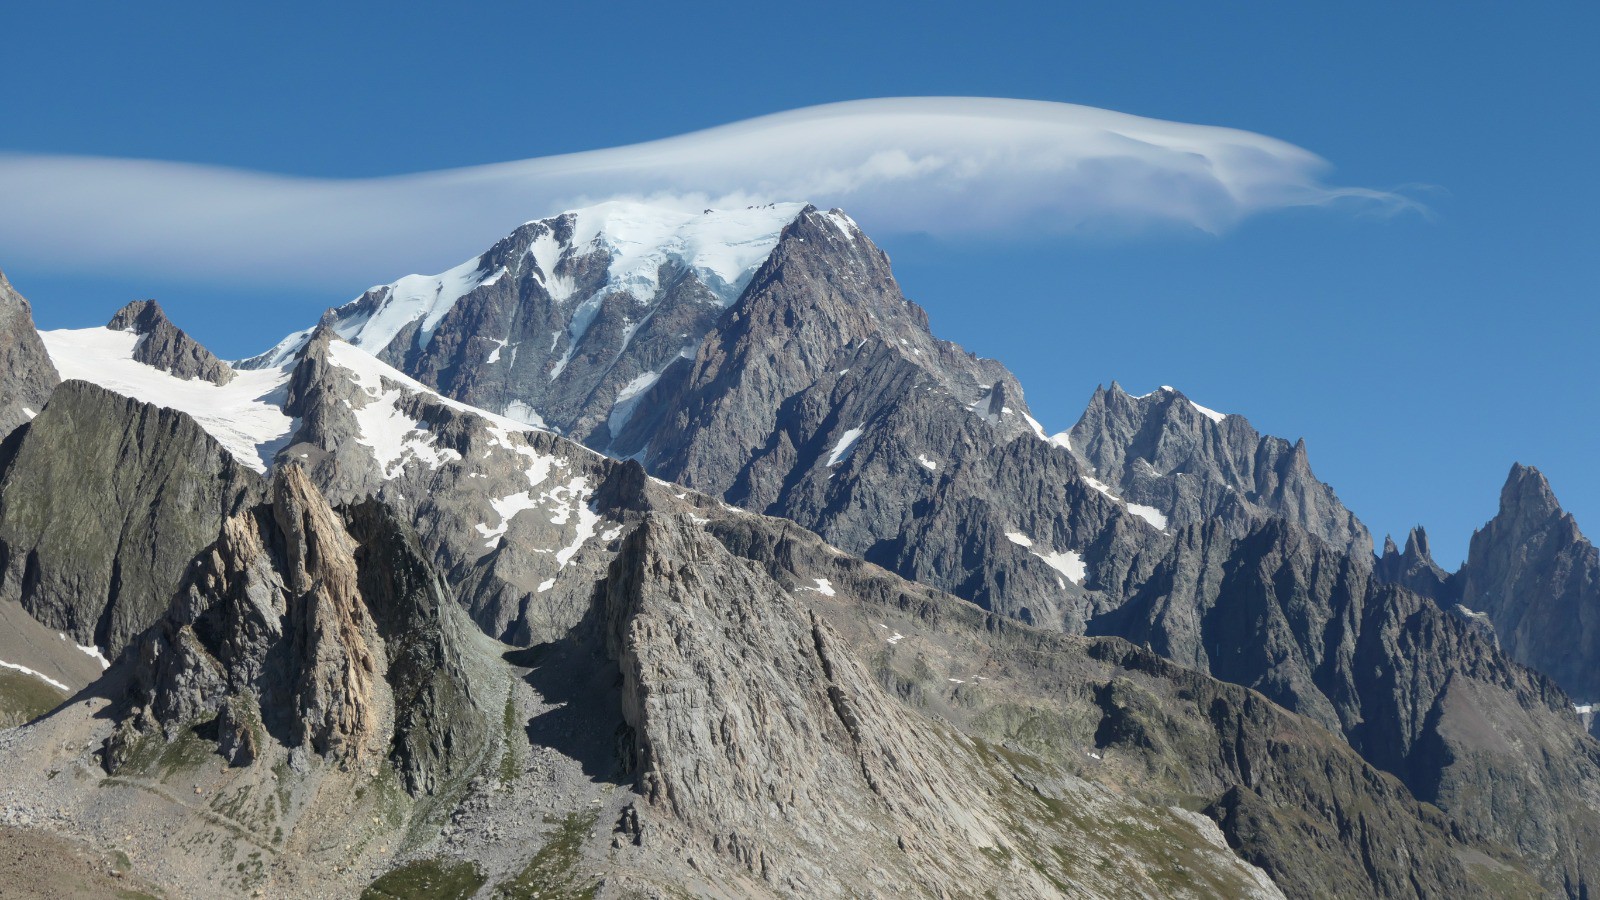 Jour 5, Un nuage d'onde confirme l'instabilité des couches d'air au-dessus du Mont Blanc et annonce d'jà l'arrivée prochaine d'une perturbe active